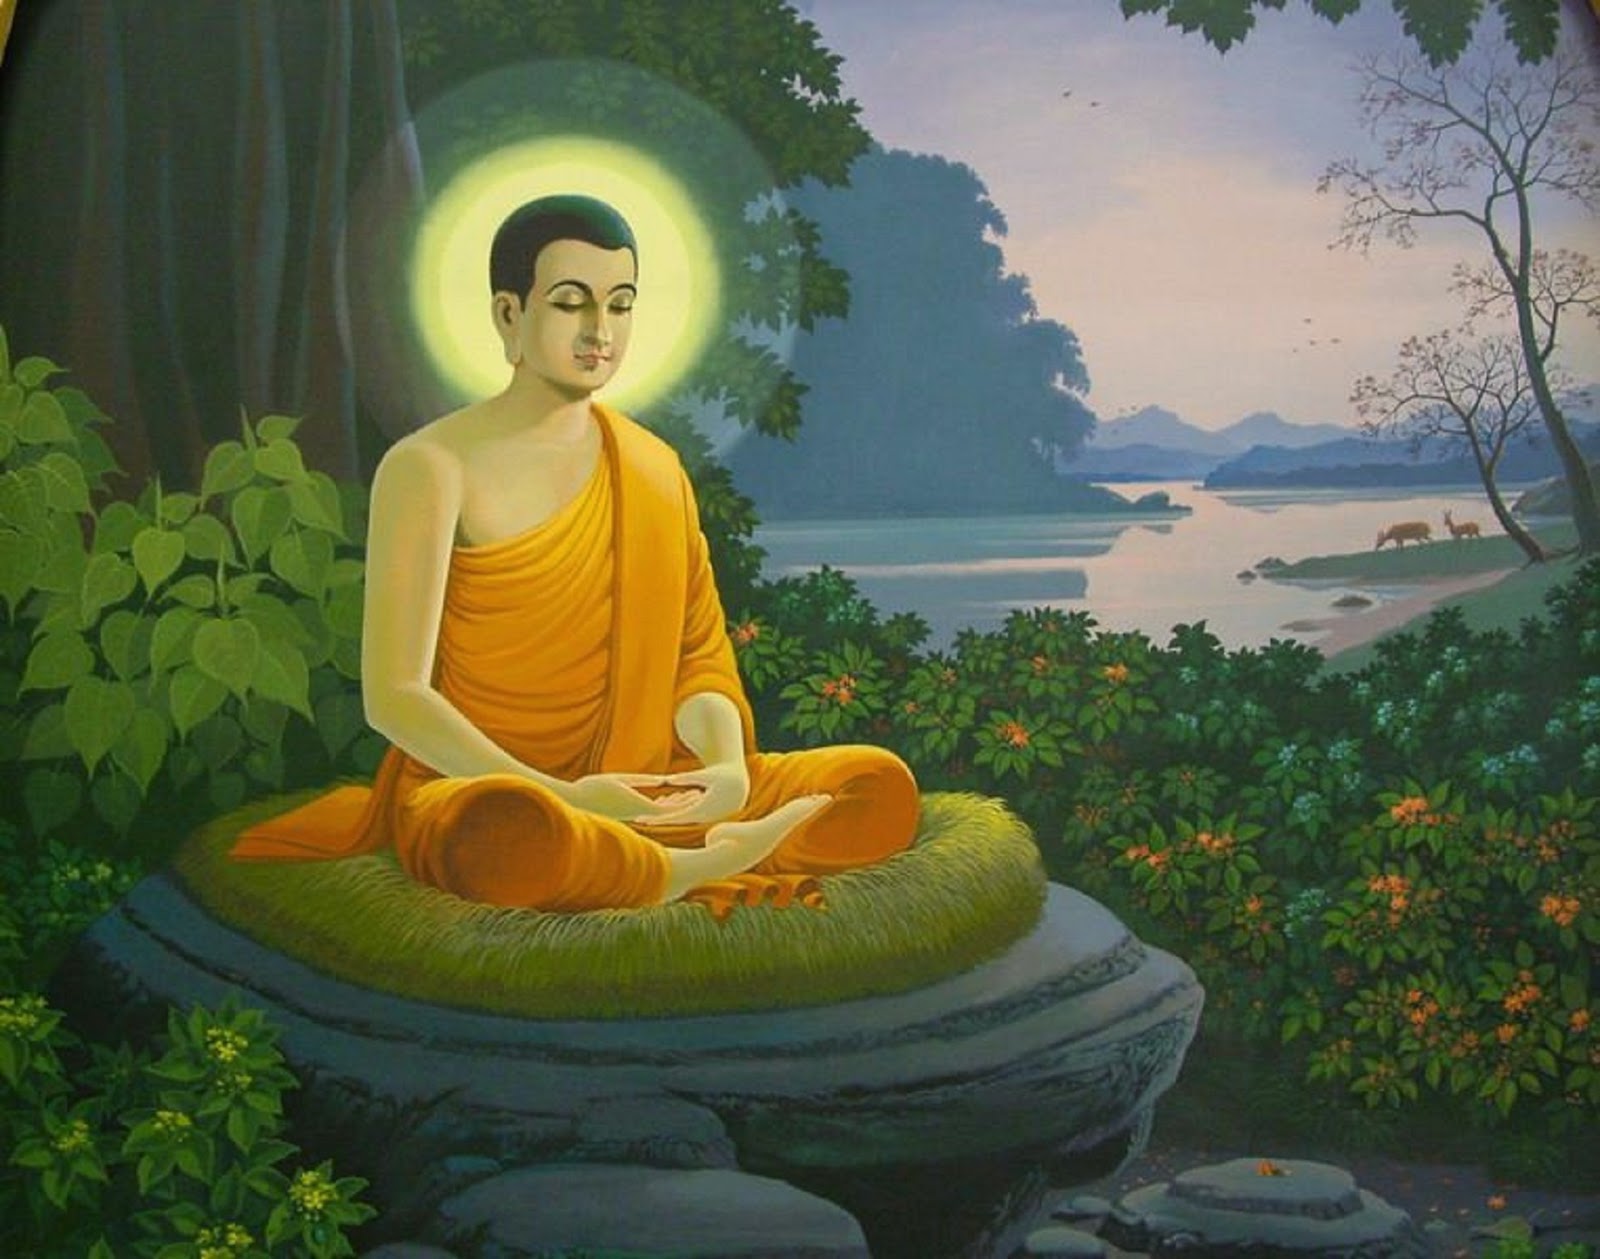 Ảnh Phật Thích Ca Mâu Ni là biểu tượng của lòng nhân ái và tình thương vô bờ. Hãy tới xem bức ảnh để tự cho mình một khoảnh khắc bình yên và tĩnh lặng trước vẻ đẹp của đấng Bổn Sư thánh thiện.